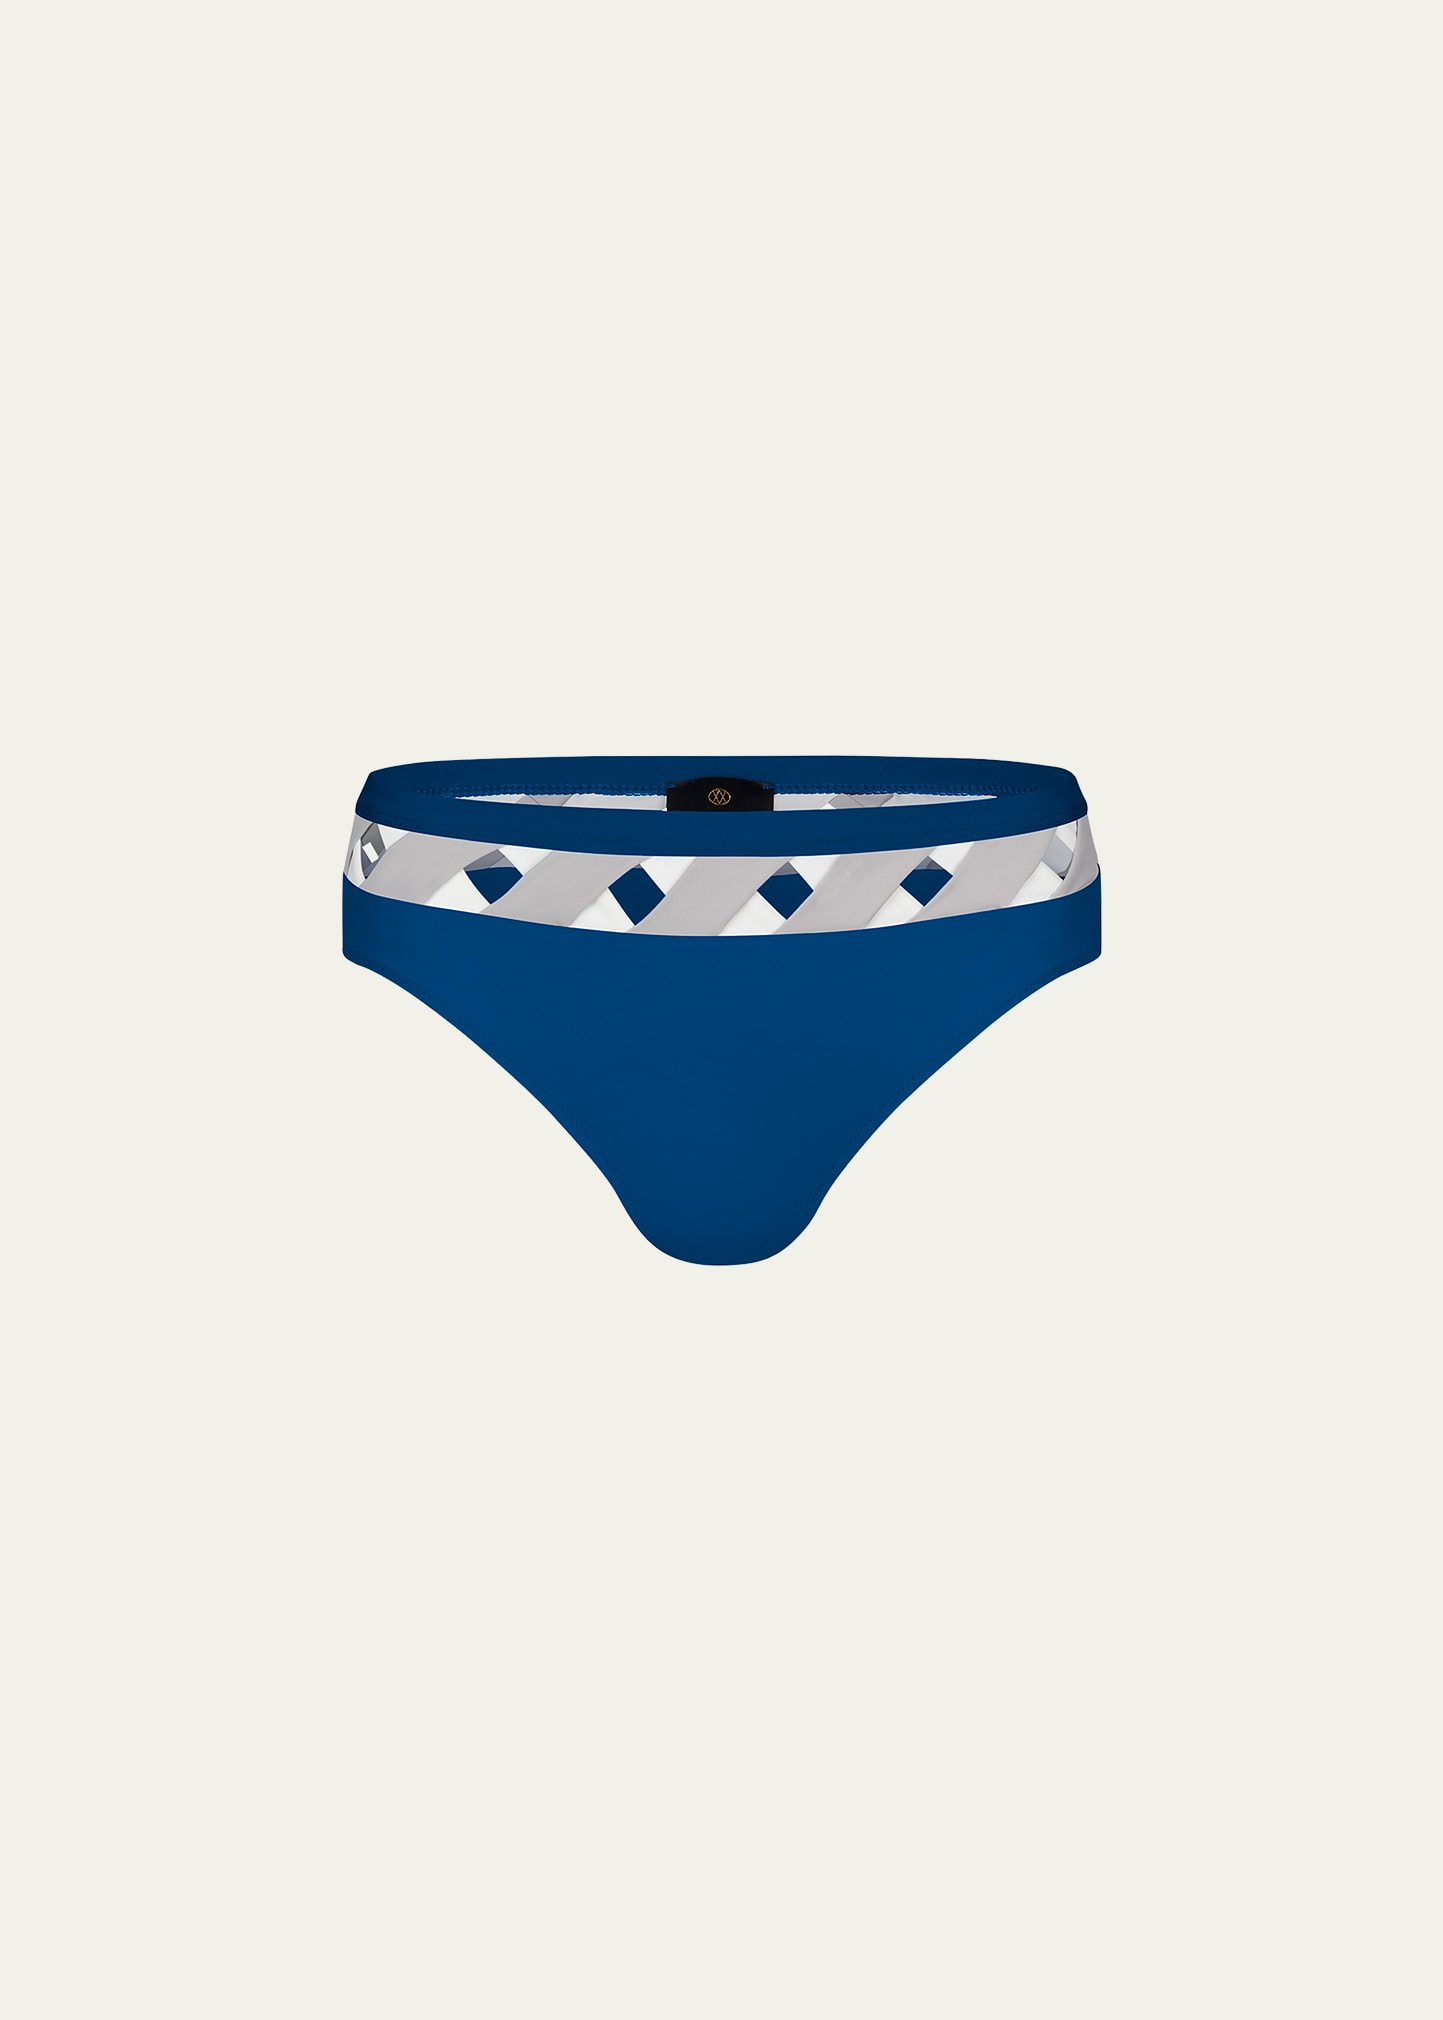 Valimare Portofino Colorblock Bikini Bottoms In Mineral Blue/mult